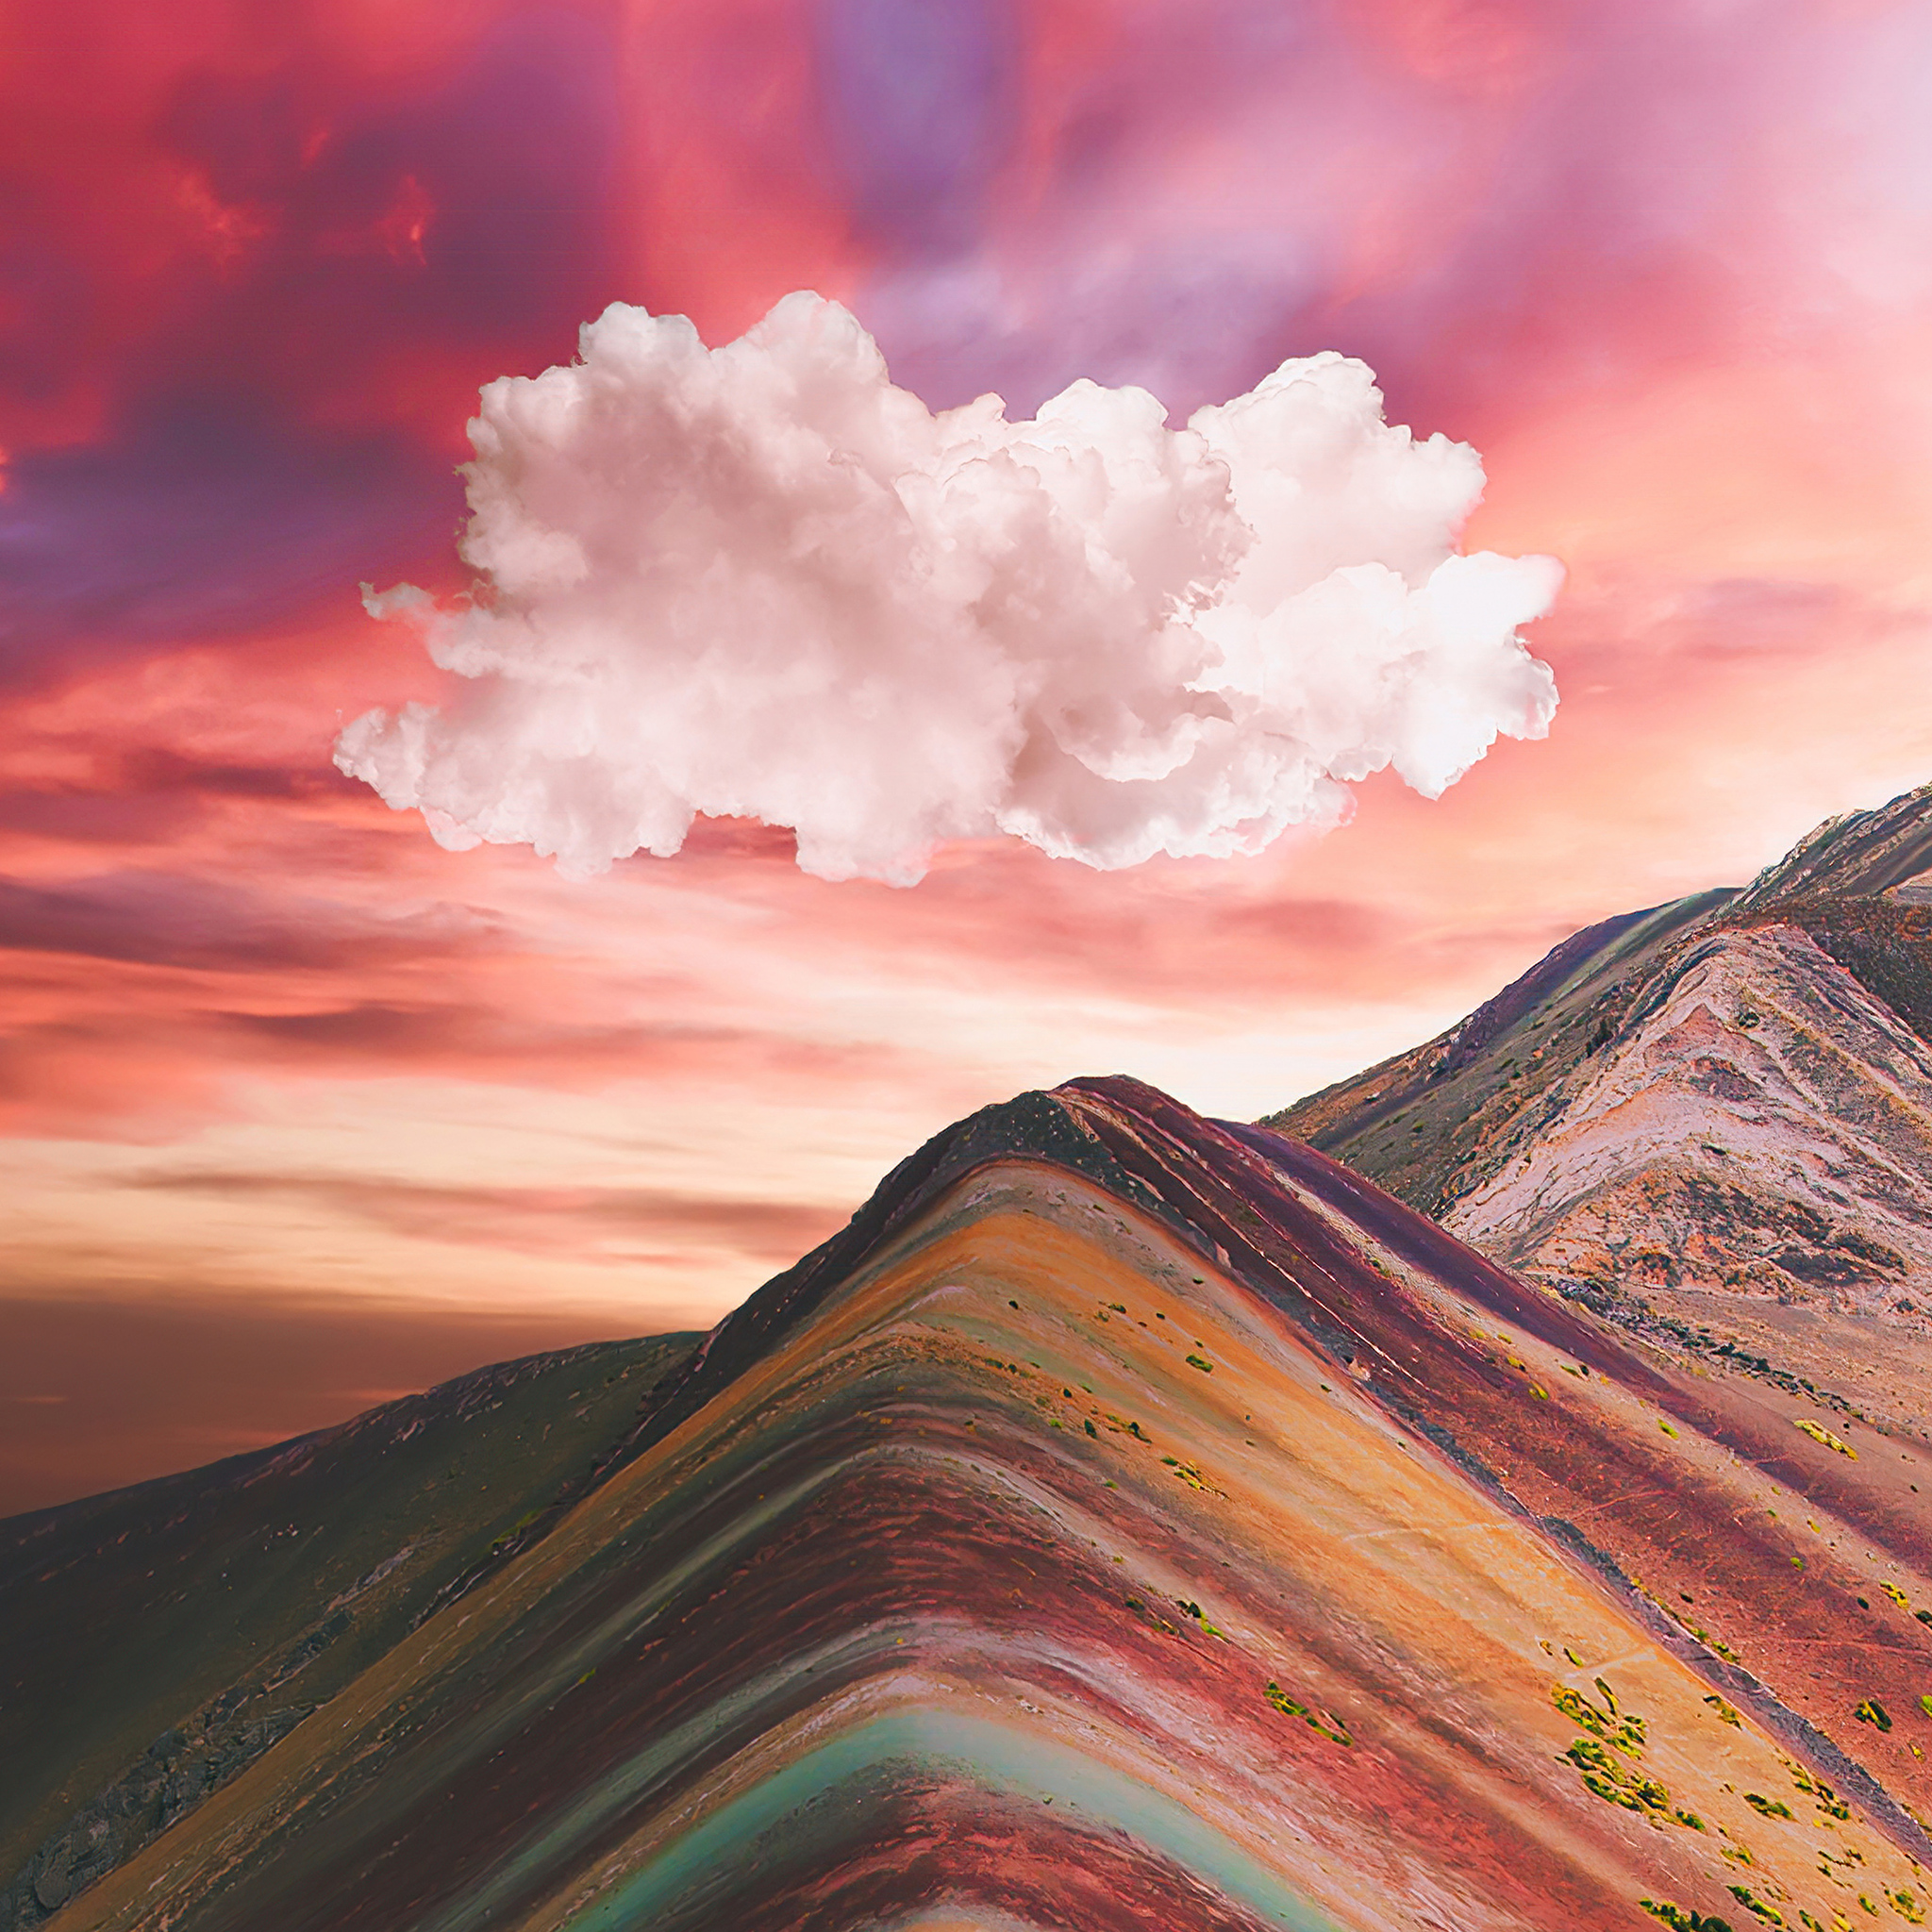 Vinicunca Rainbow Mountain: Hãy khám phá sự đặc biệt của núi Vinicunca với màu sắc cầu vồng phong phú và hùng vĩ. Đây là một trong những địa điểm du lịch nổi tiếng nhất tại Peru, hứa hẹn sẽ mang đến cho bạn một trải nghiệm thú vị và độc đáo nhất! Nhấn vào hình ảnh để khám phá cảnh quan đẹp như tranh vẽ của núi Vinicunca.